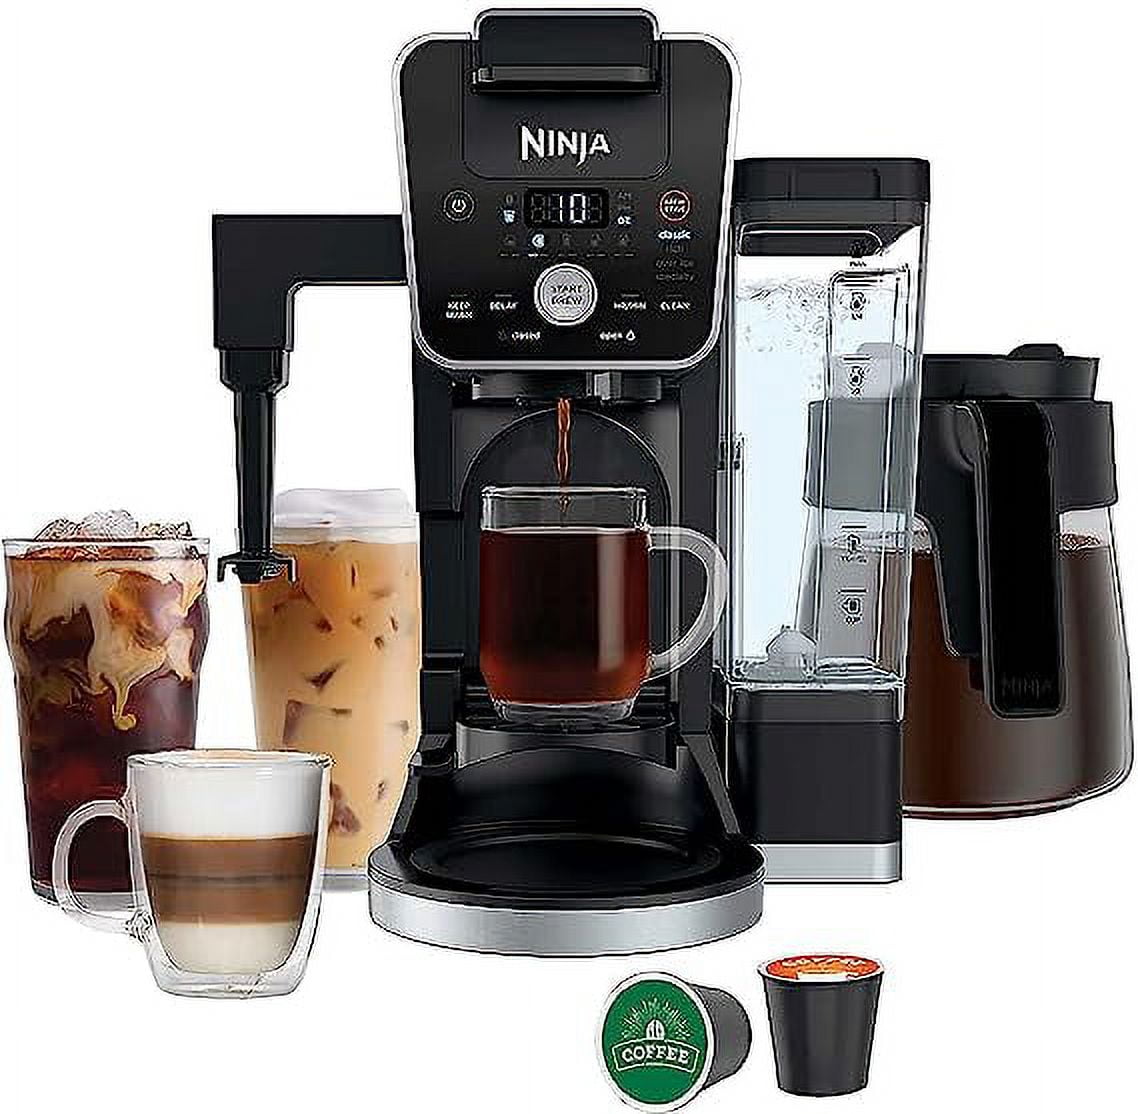 Ninja CM305 Coffe Maker – EZPAWN